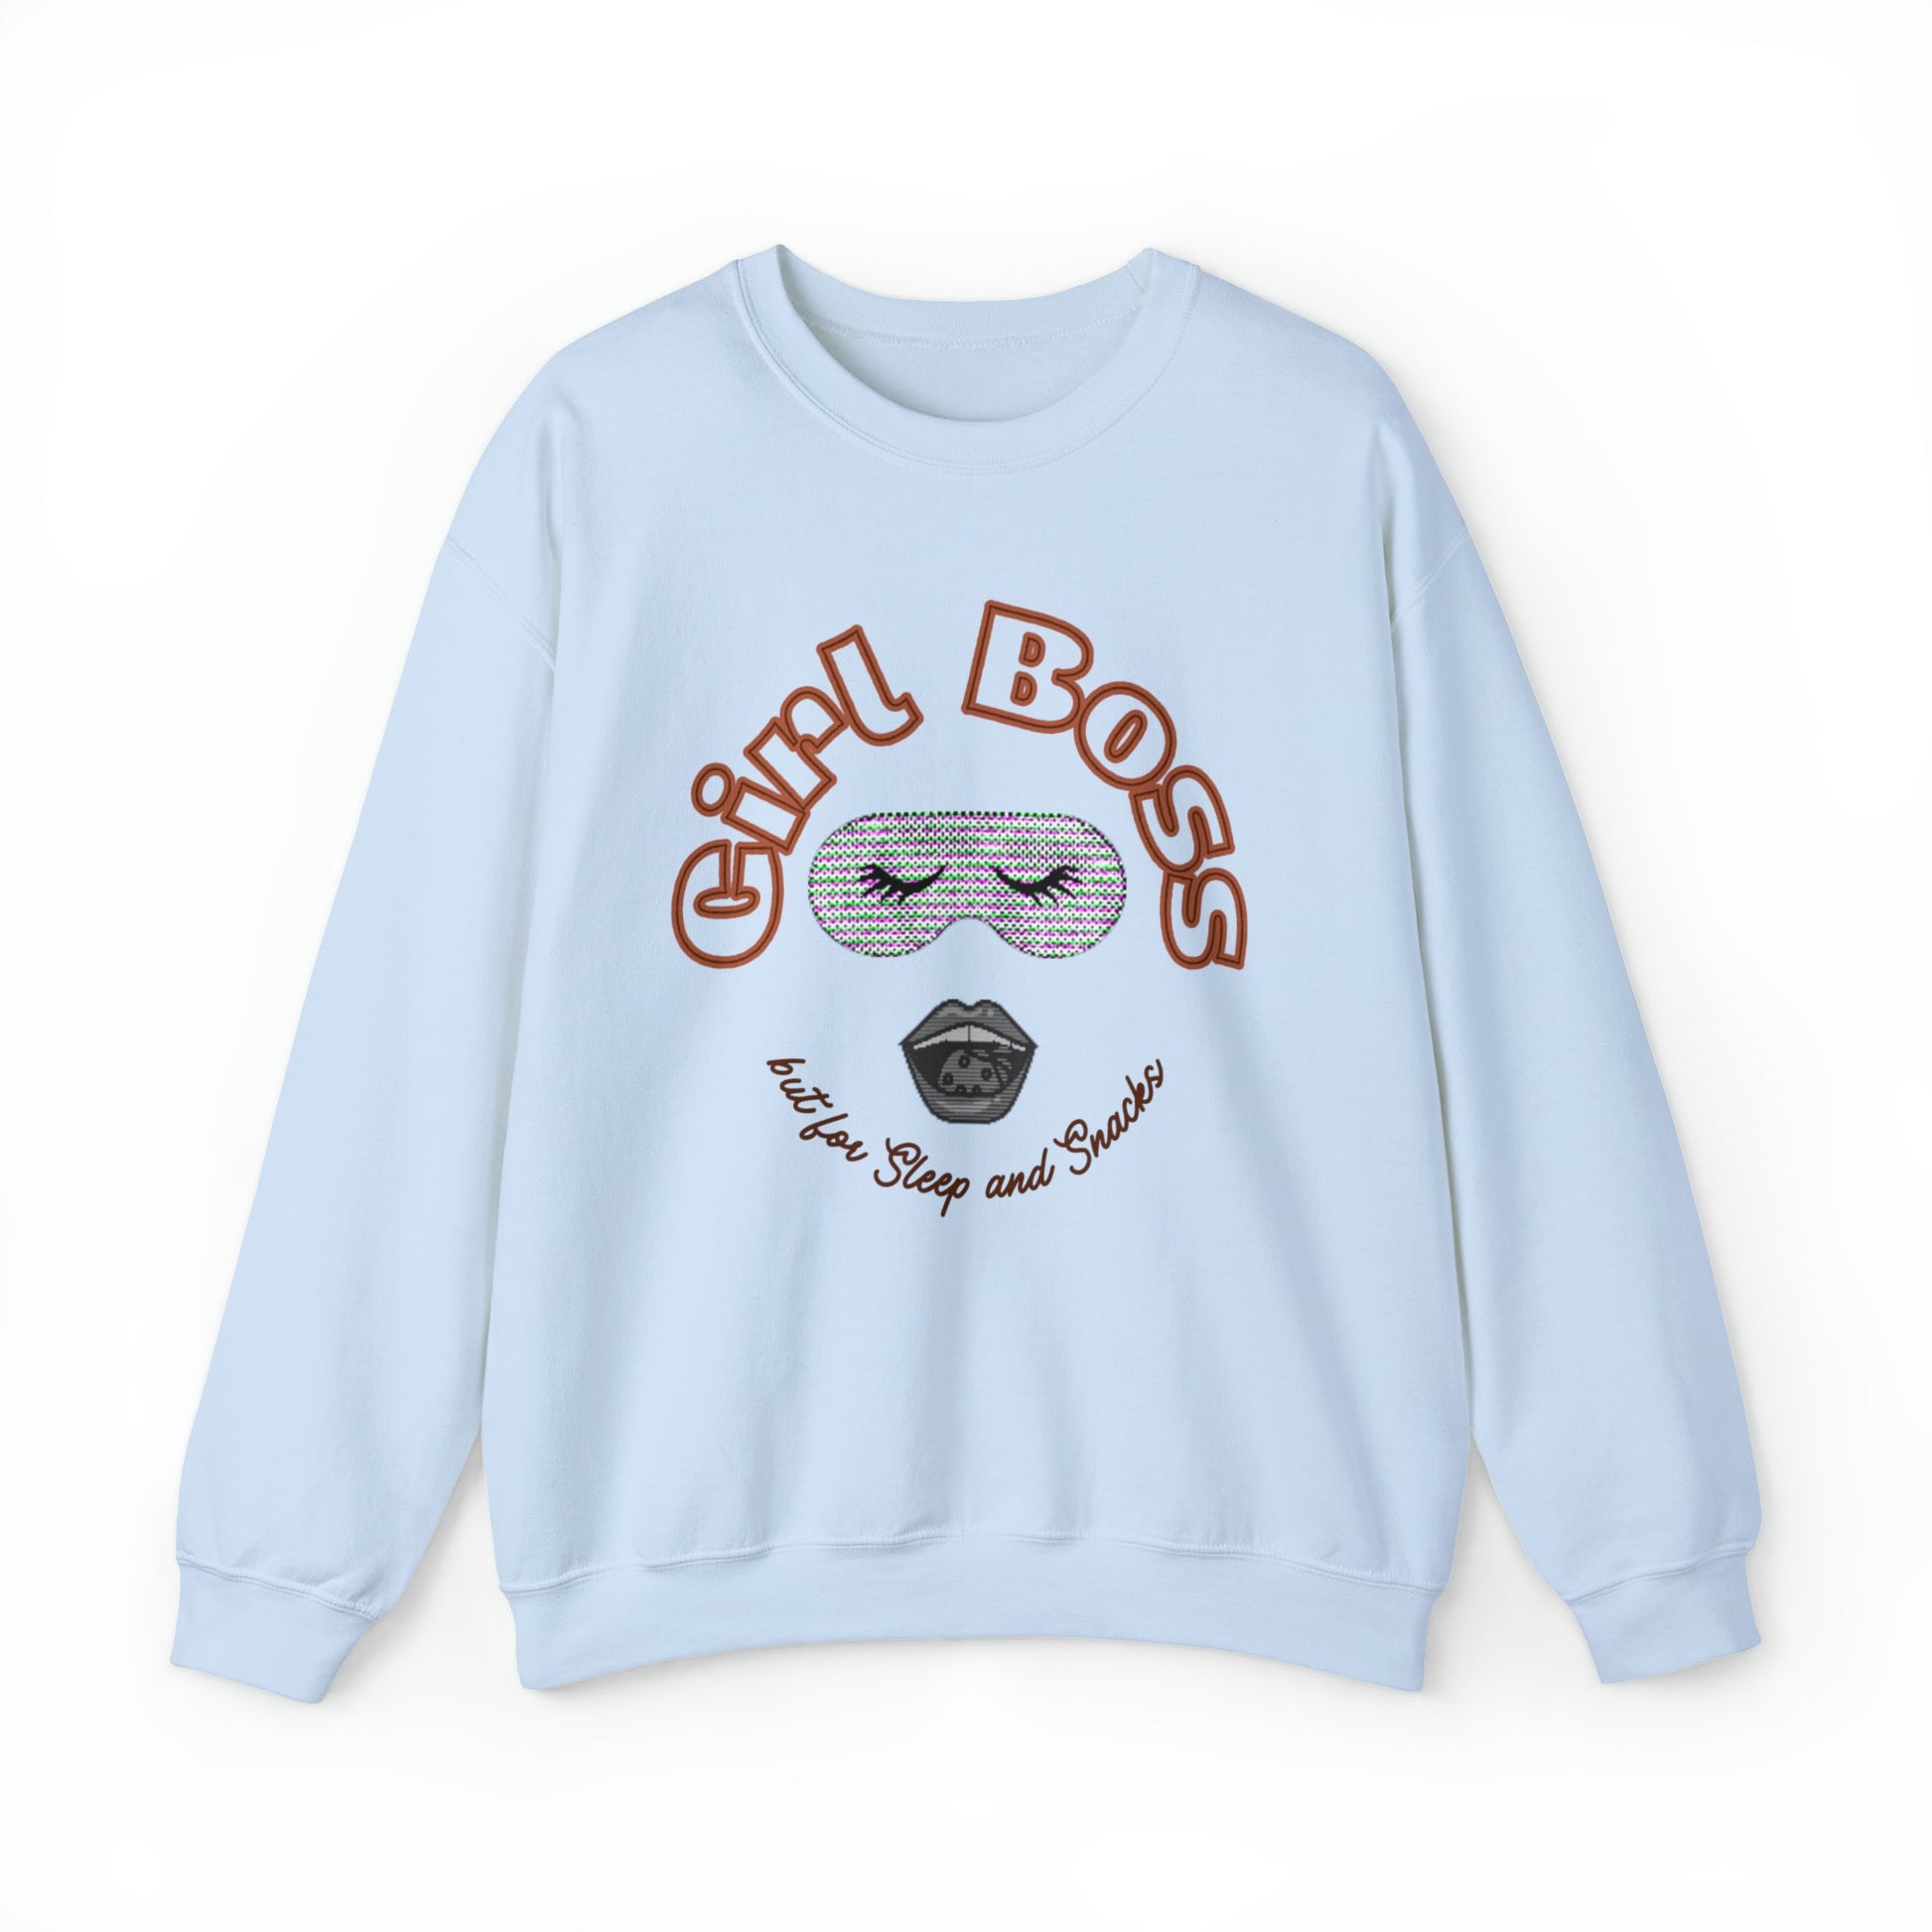 Girl Boss But for Sleep and Snacks Unisex Heavy Blend™ Crewneck Sweatshirt